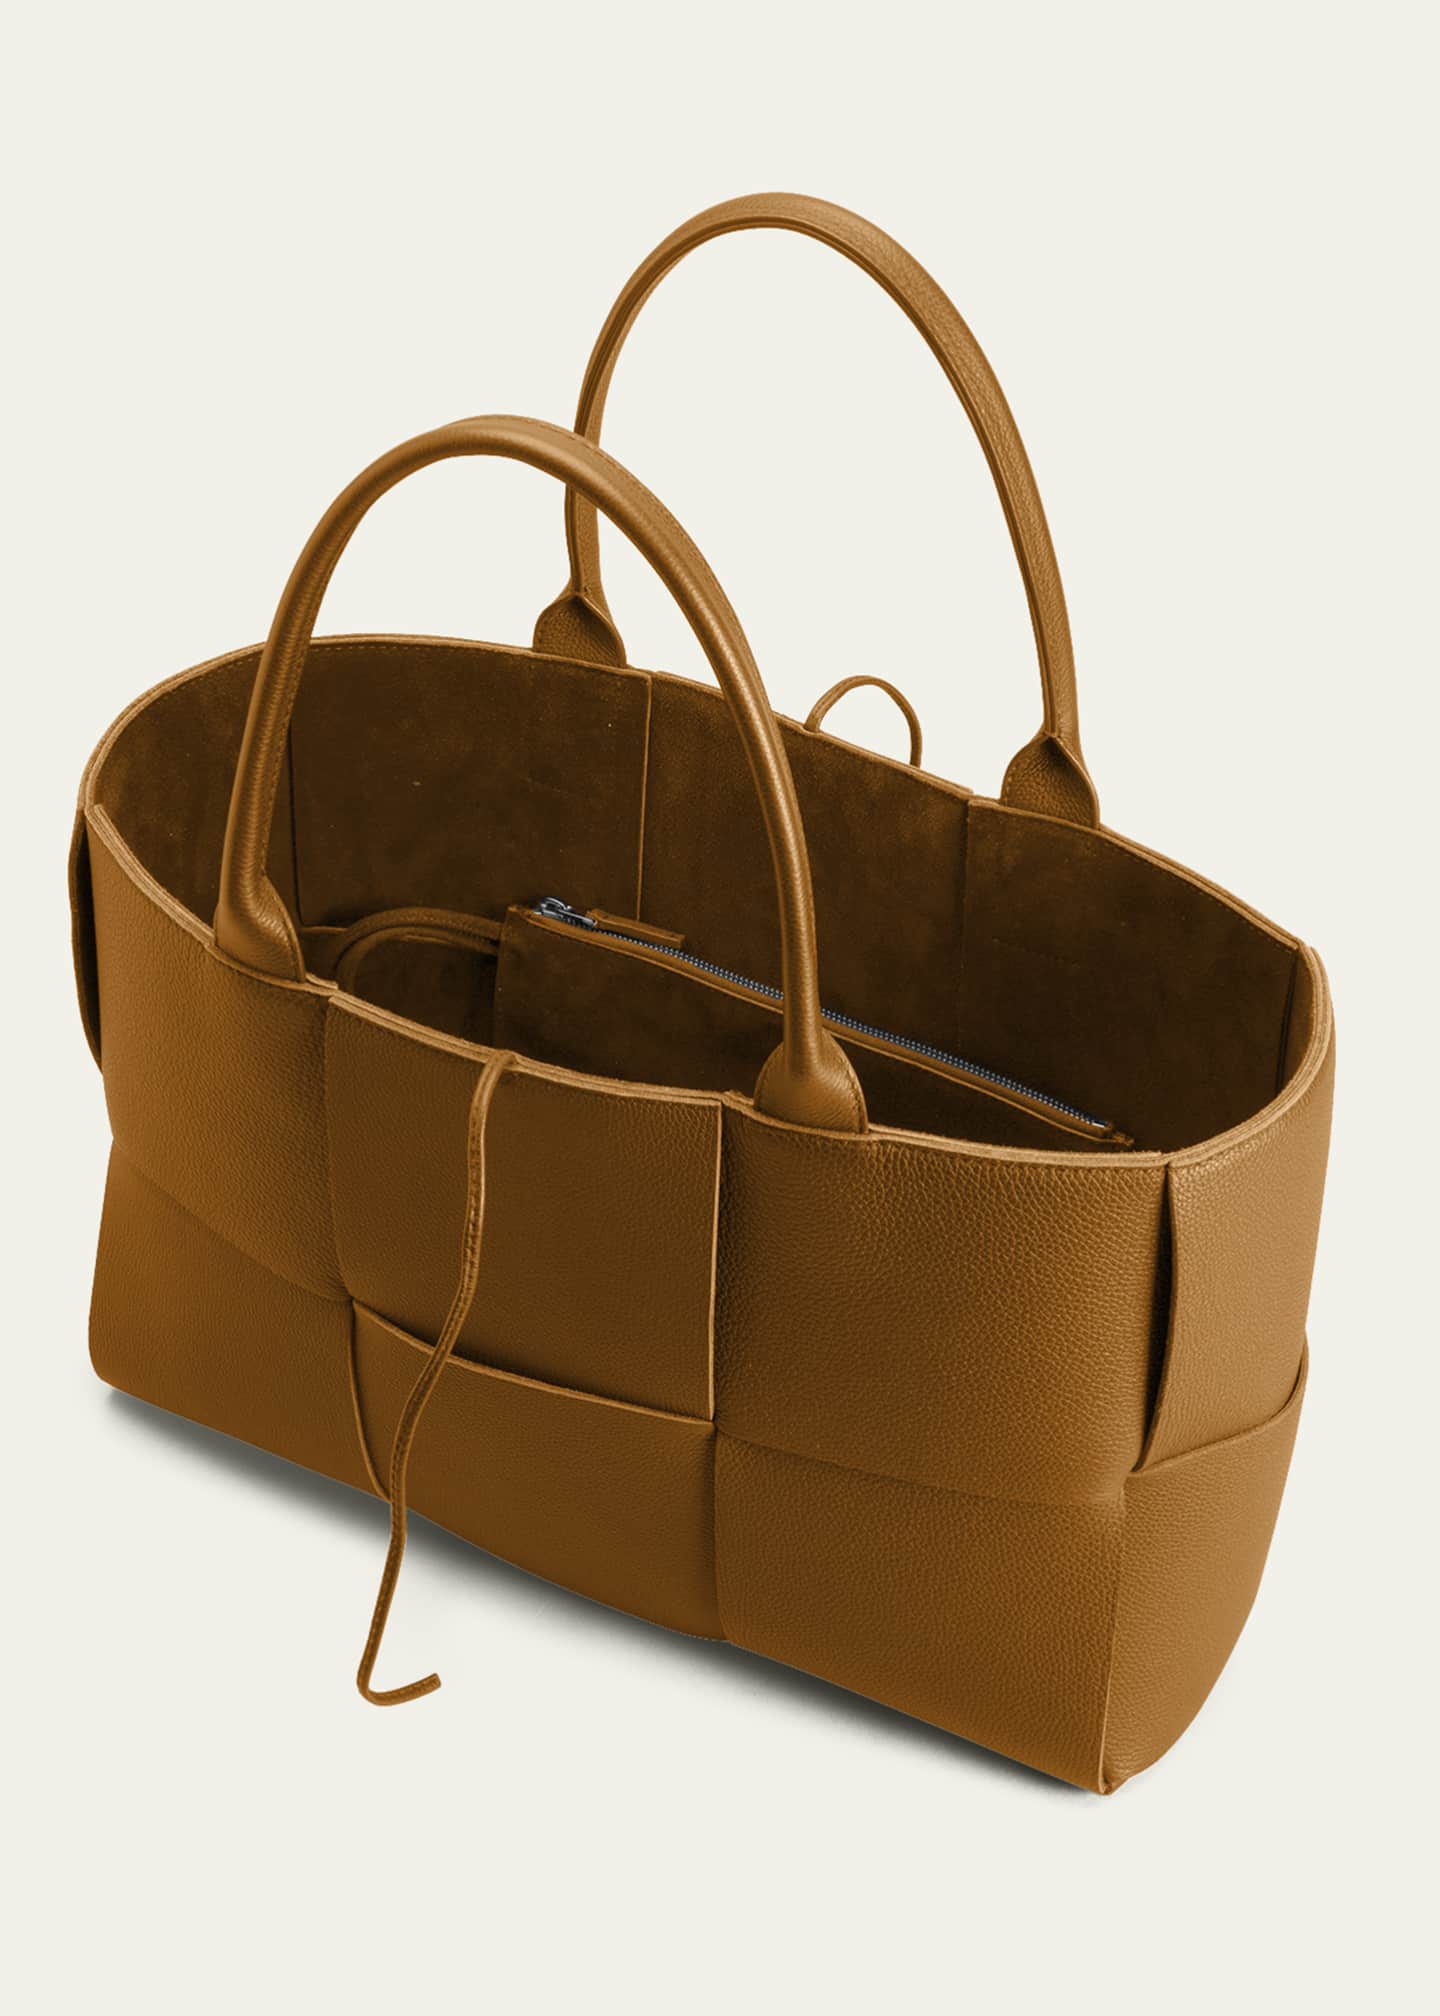 Medium Arco Tote Bag